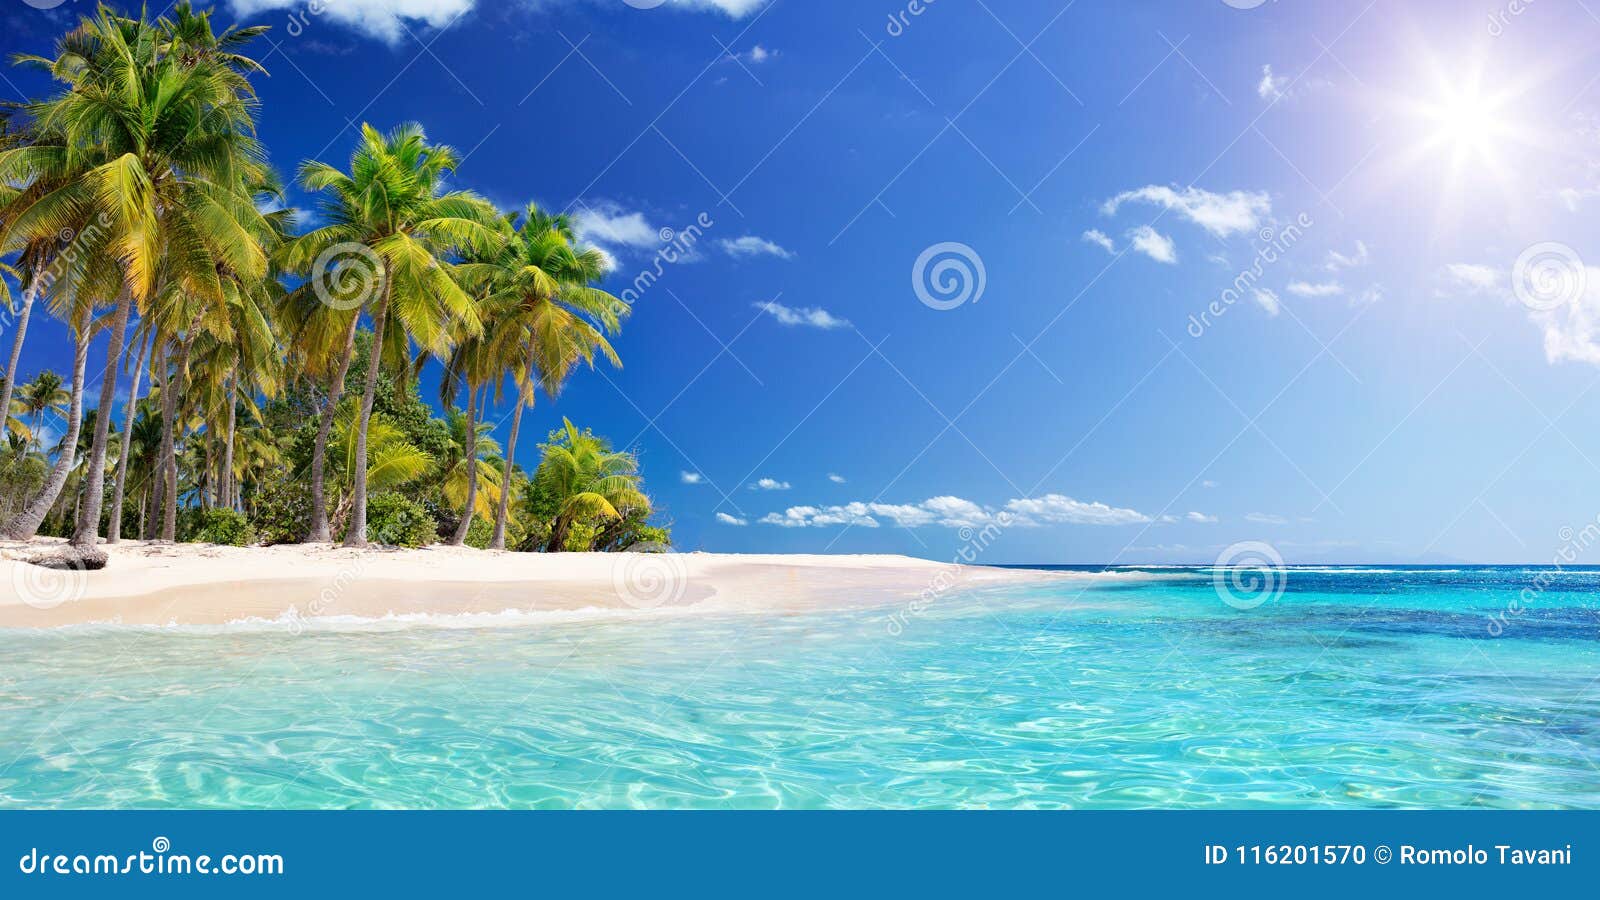 palm beach in tropical paradise